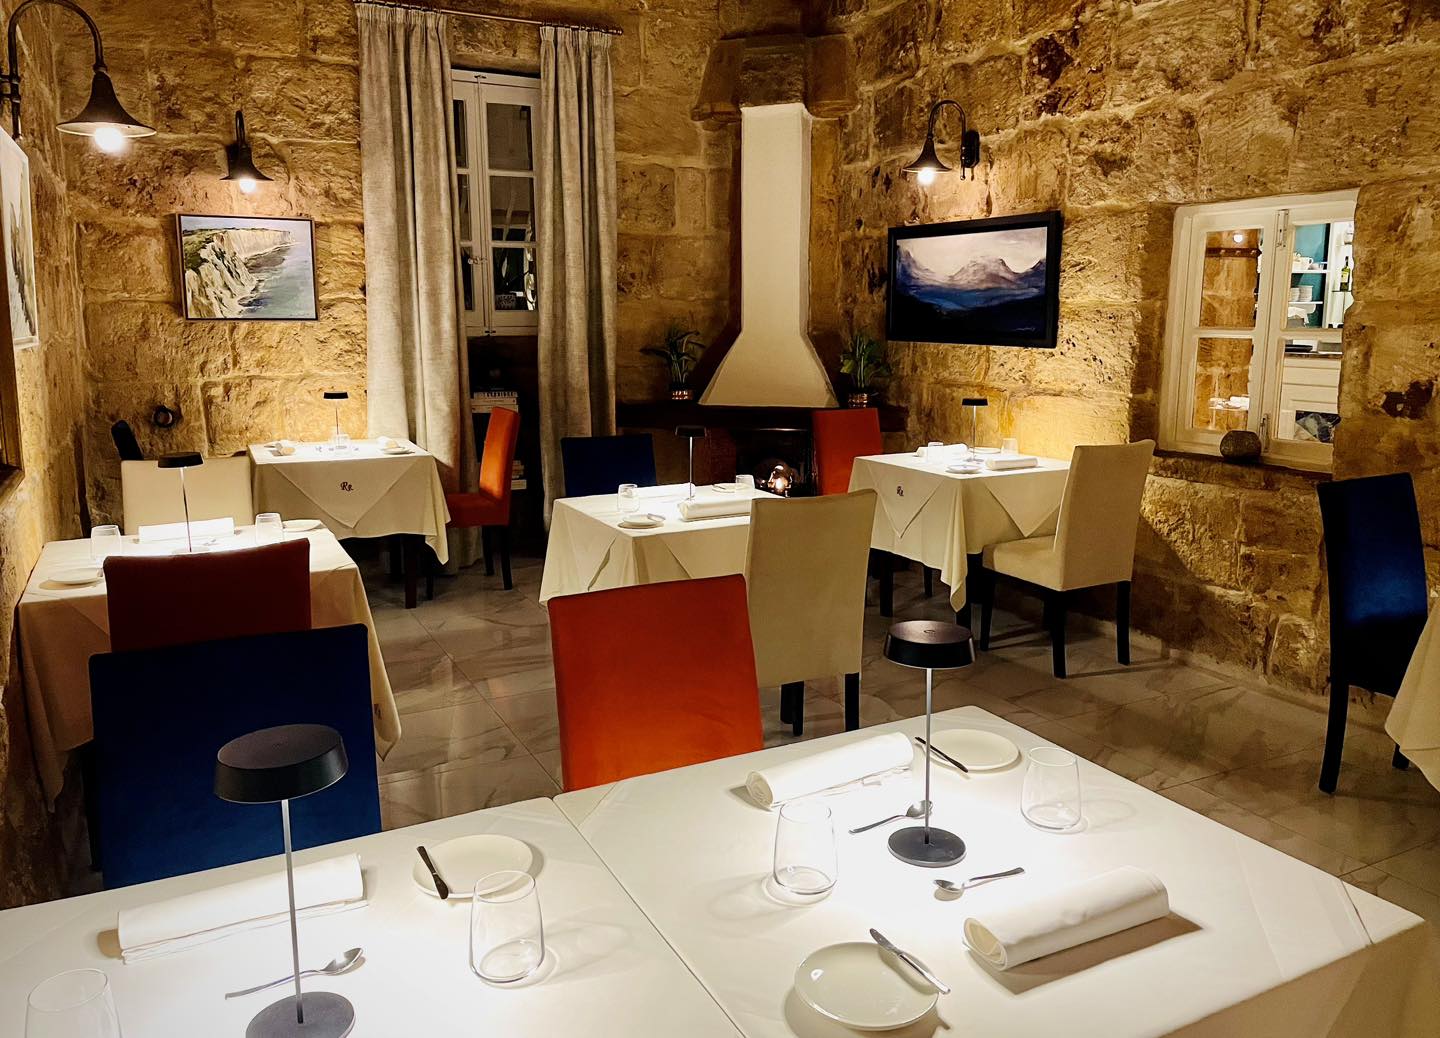 Rebekah’s - restaurants in Malta